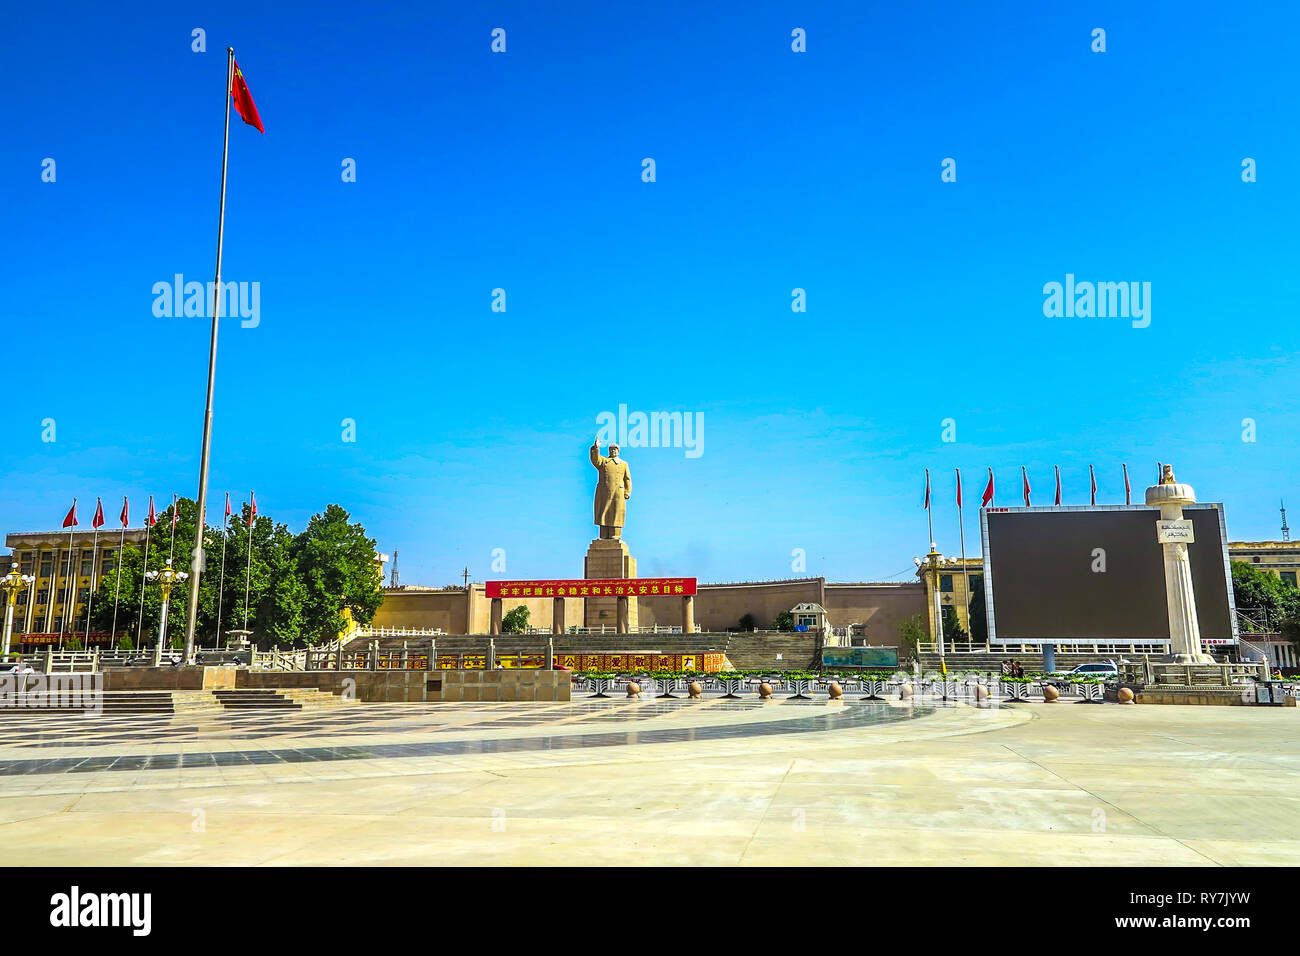 Kashgar People's Park Square avec la Statue de Mao Zedong Waving Flag chinois Banque D'Images